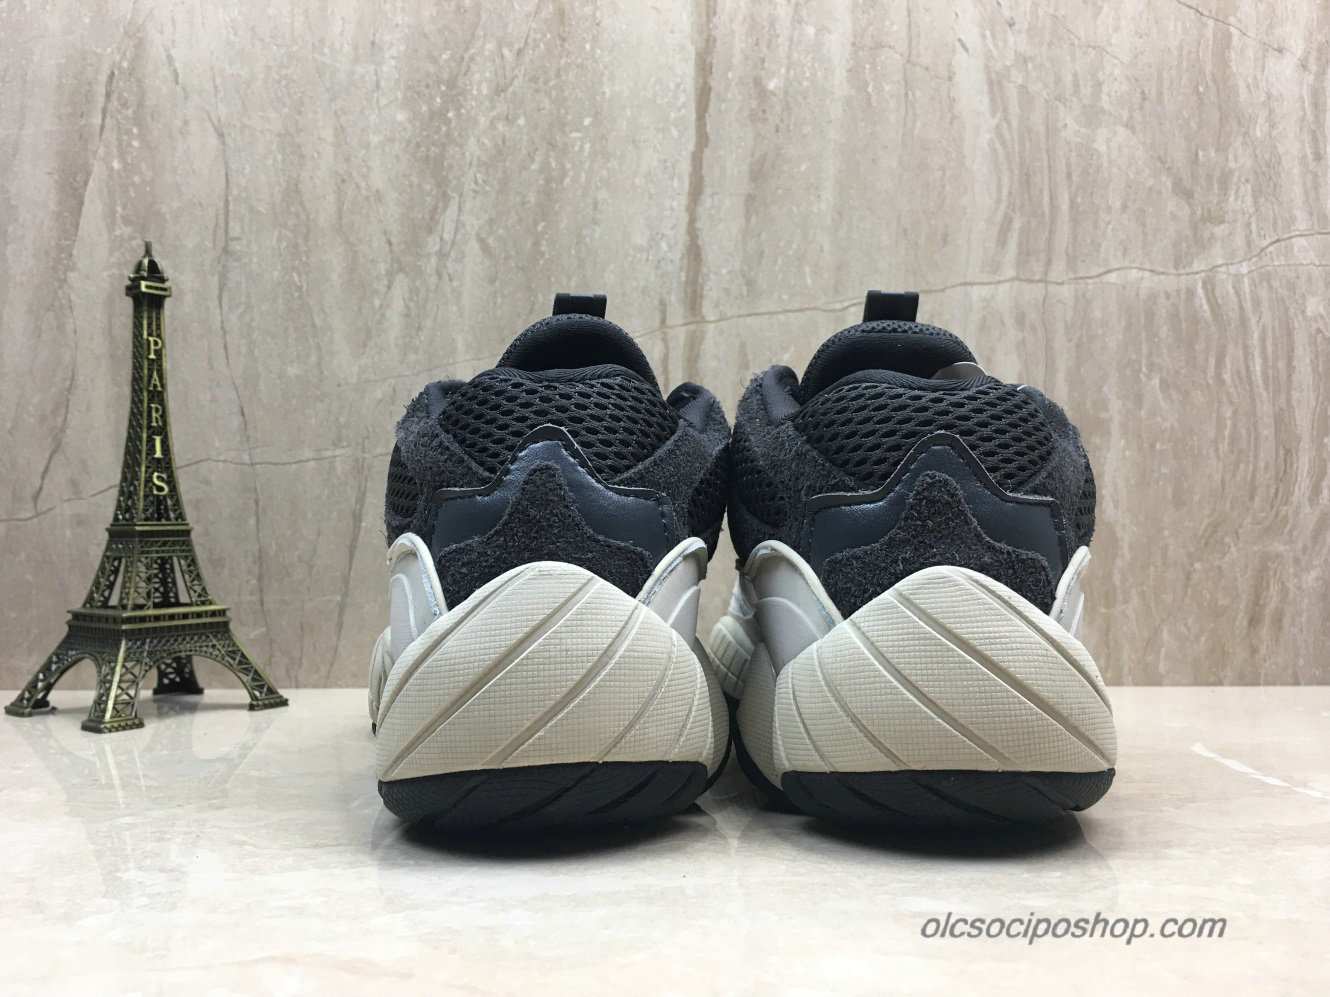 Adidas Yeezy Desert Rat 500 Blush Hamu Szürke/Fekete Cipők (DB3968) - Kattintásra bezárul